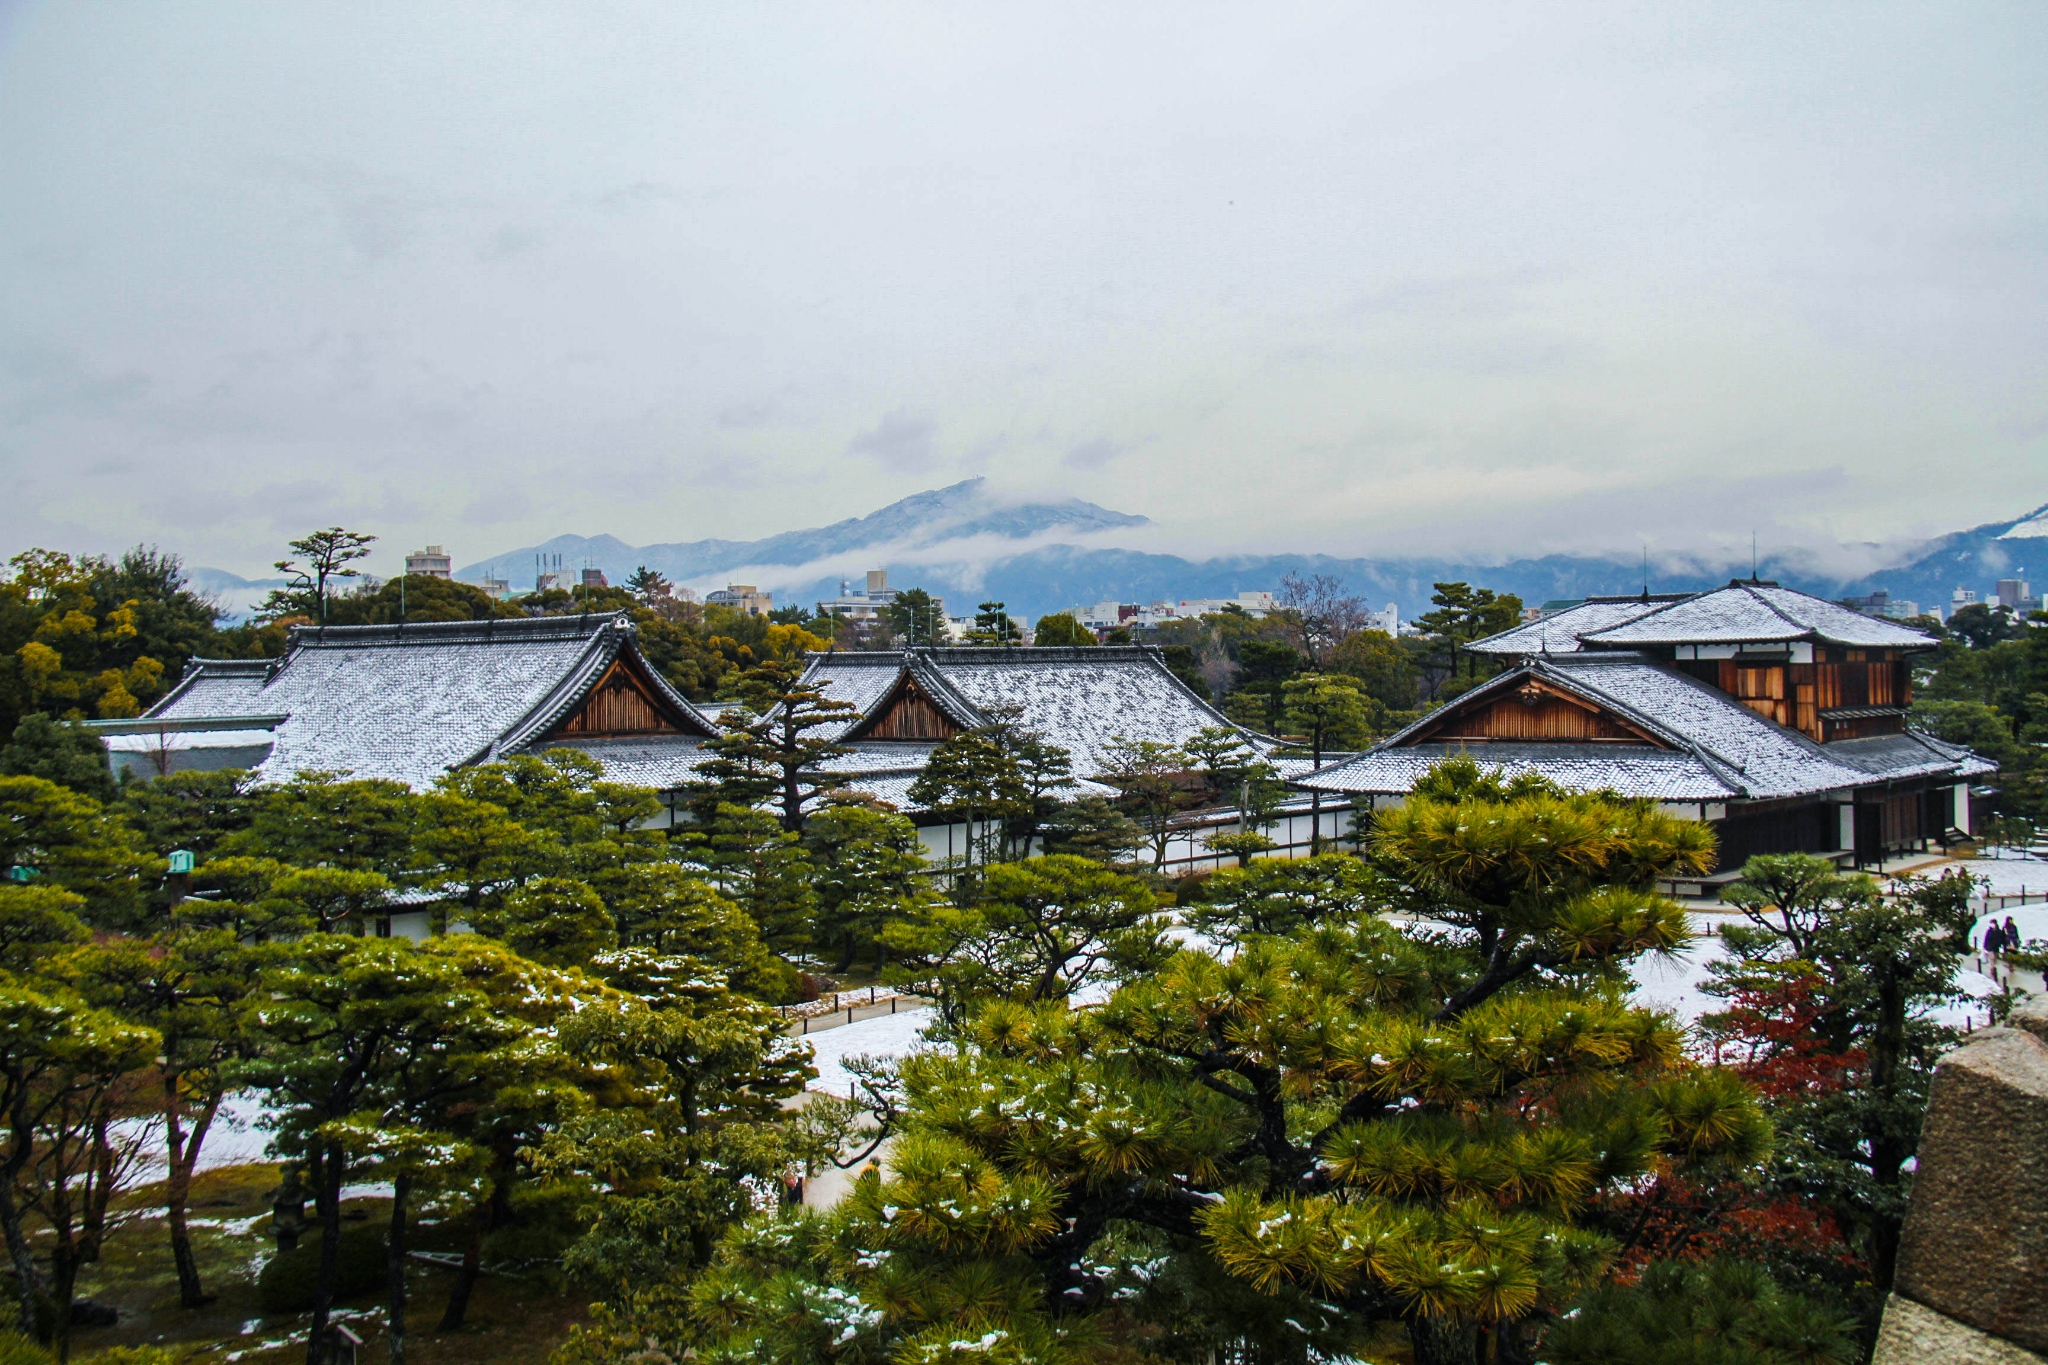 京都旅游景点,京都旅游景区,京都旅游景点推荐